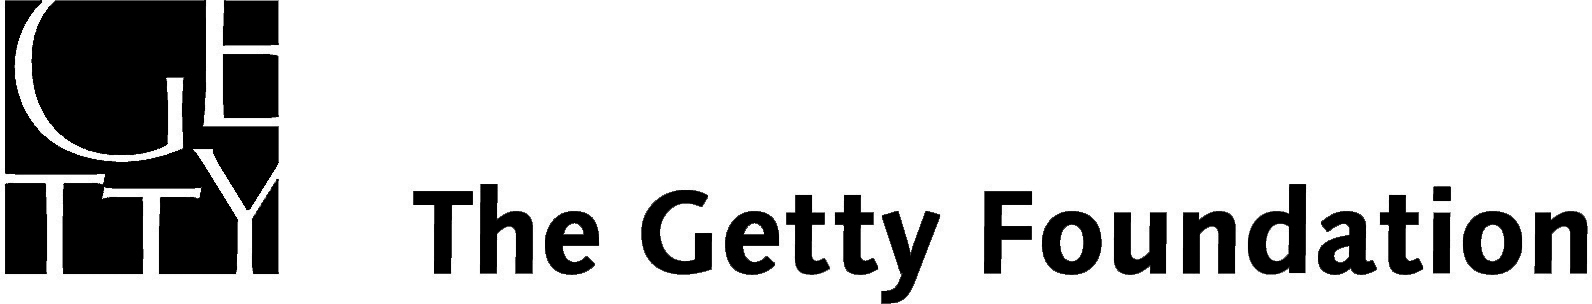 The Getty Foundation logo black highres